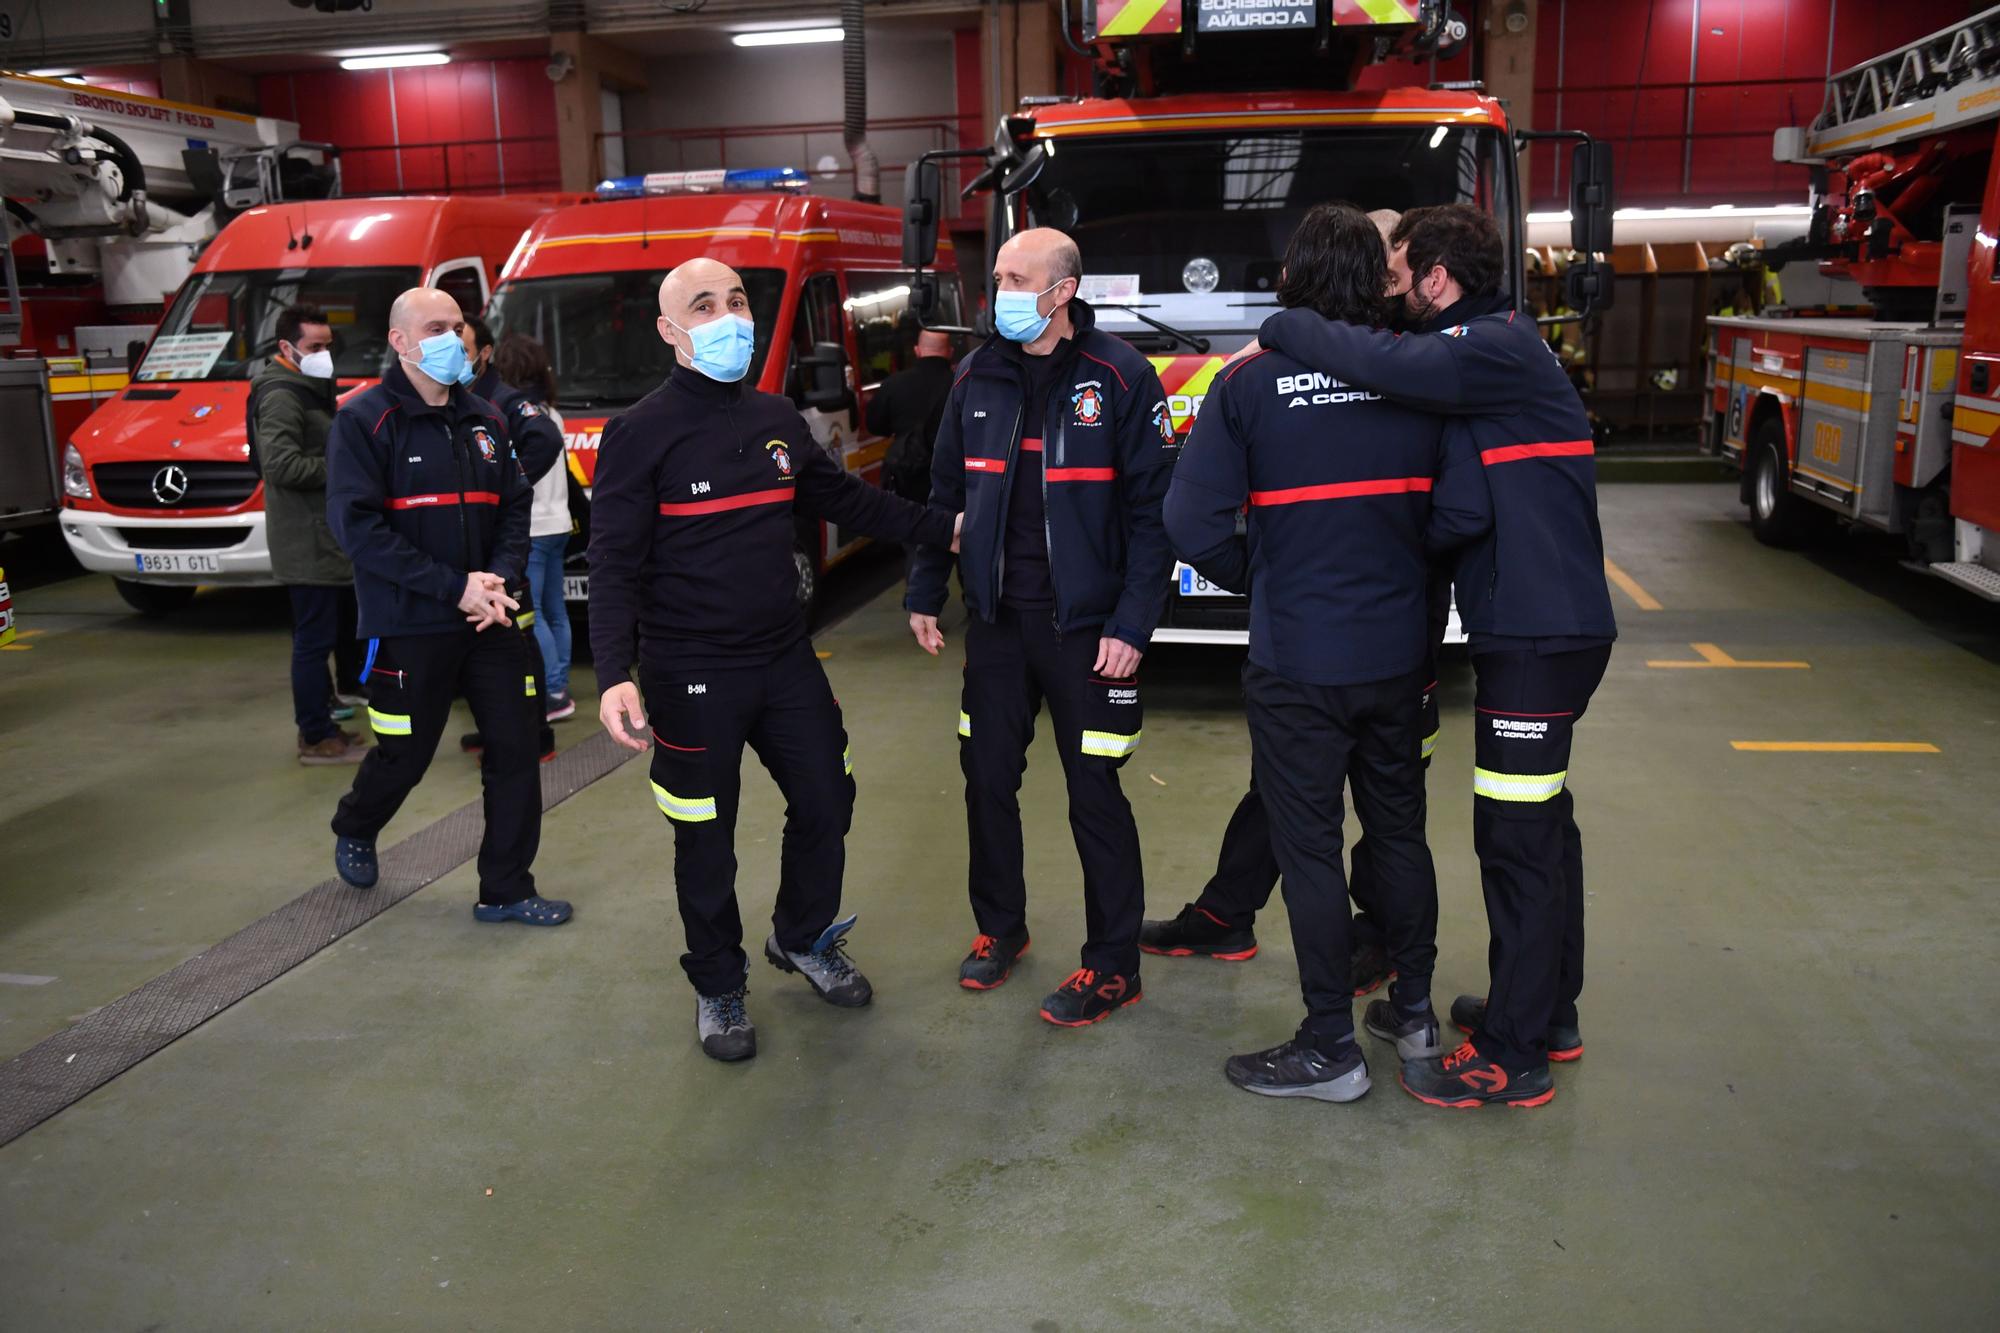 Parten de A Coruña los bomberos y policías que llevarán ayuda a Ucrania y traerán a una veintena de refugiados